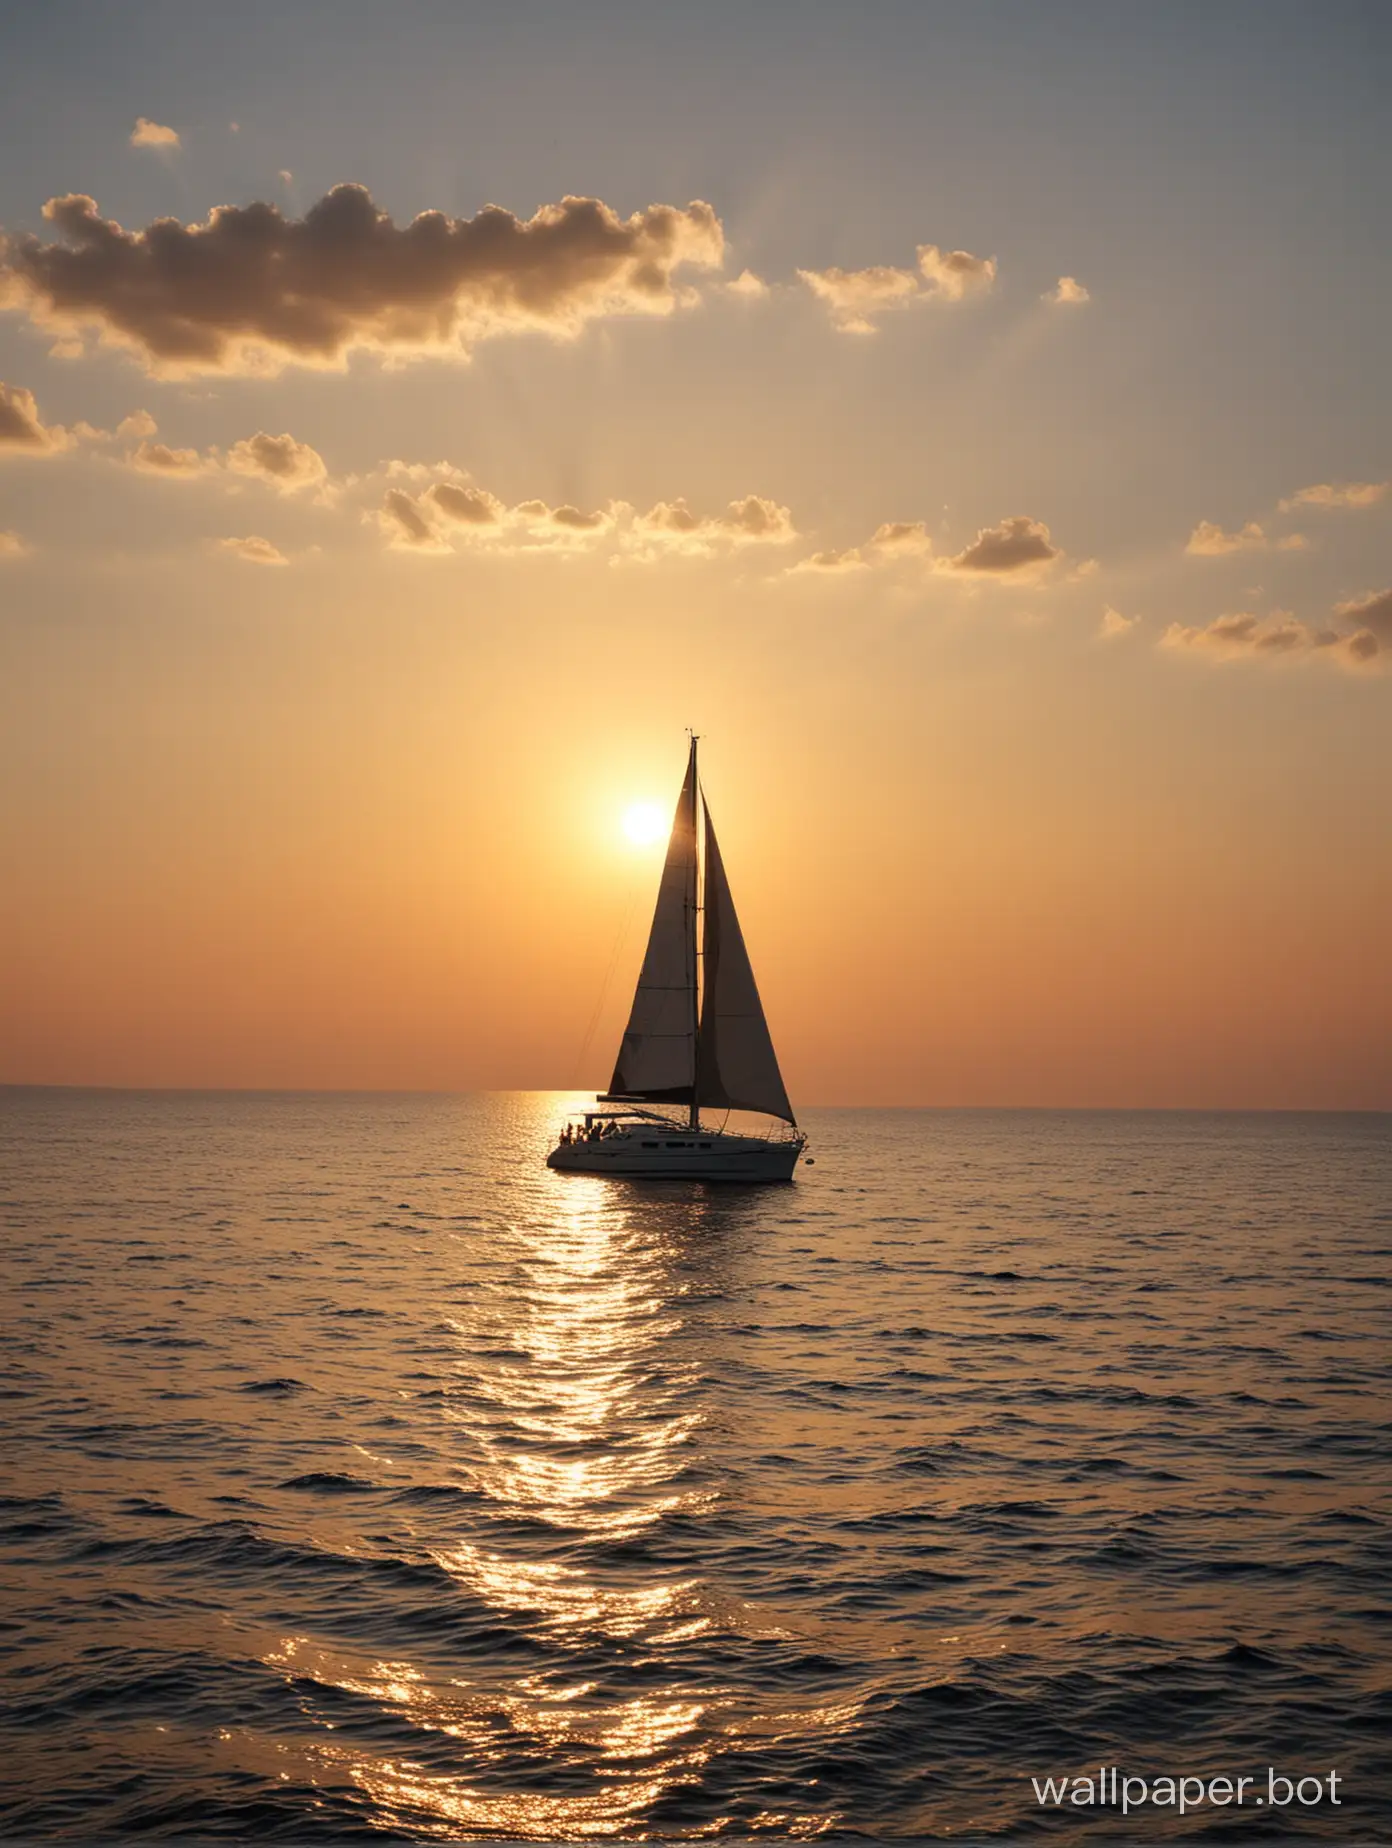 Sunset at sea in Crimea, yacht